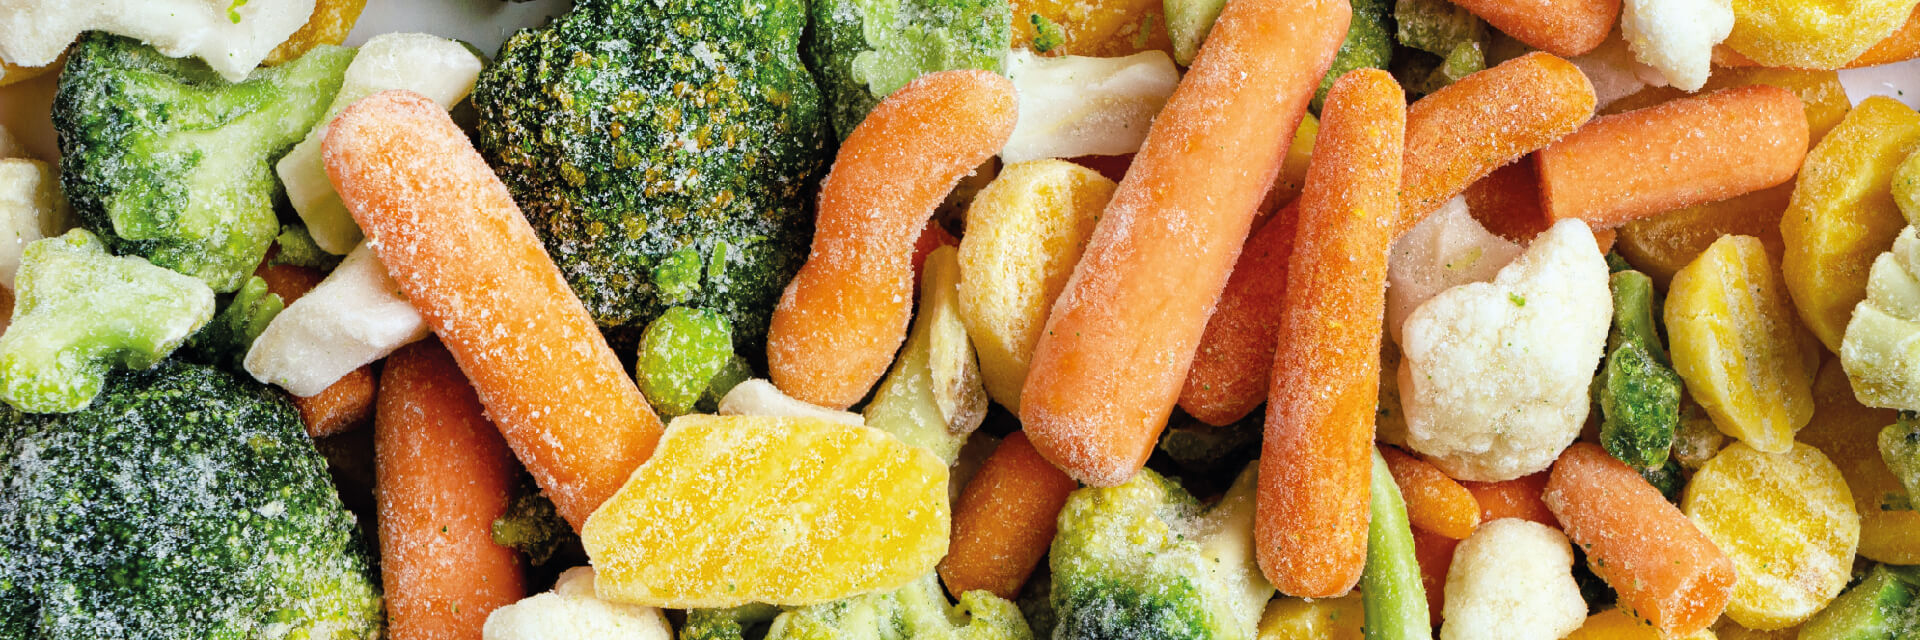 Ist frisches Gemüse besser als Tiefkühlware?